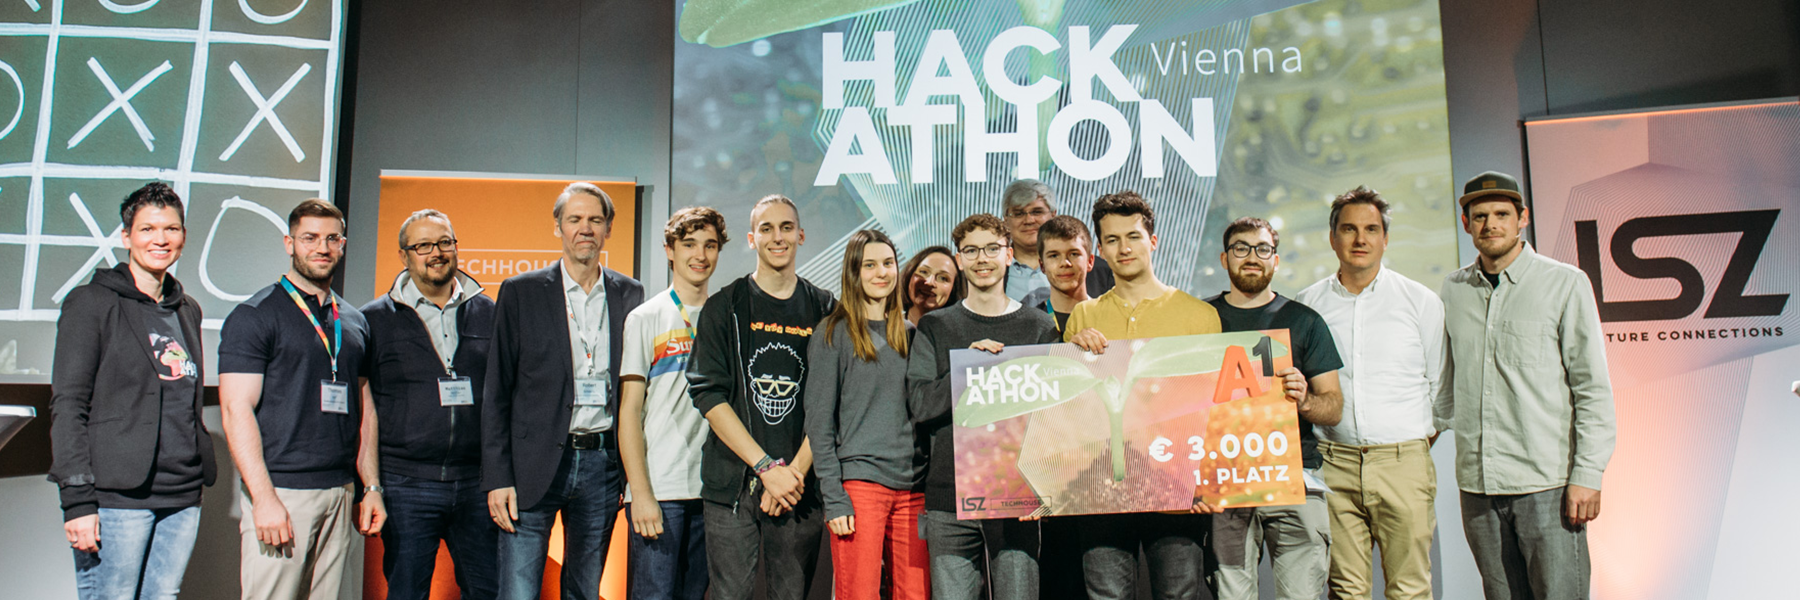 Hackathon Vienna